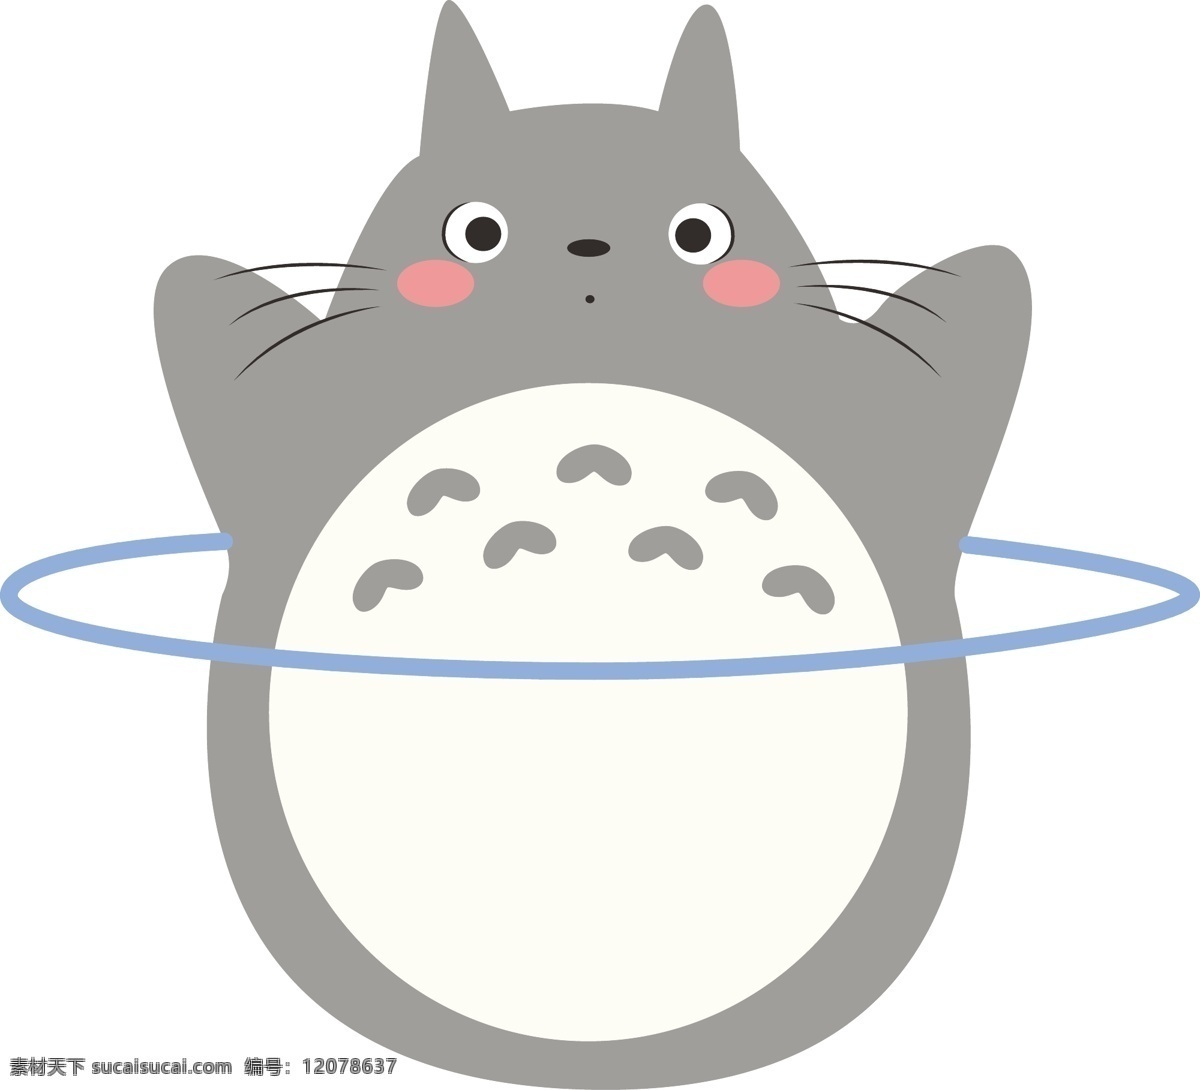 龙猫 卡通图案 矢量图 日本 宫崎骏 手绘小动物 动漫动画